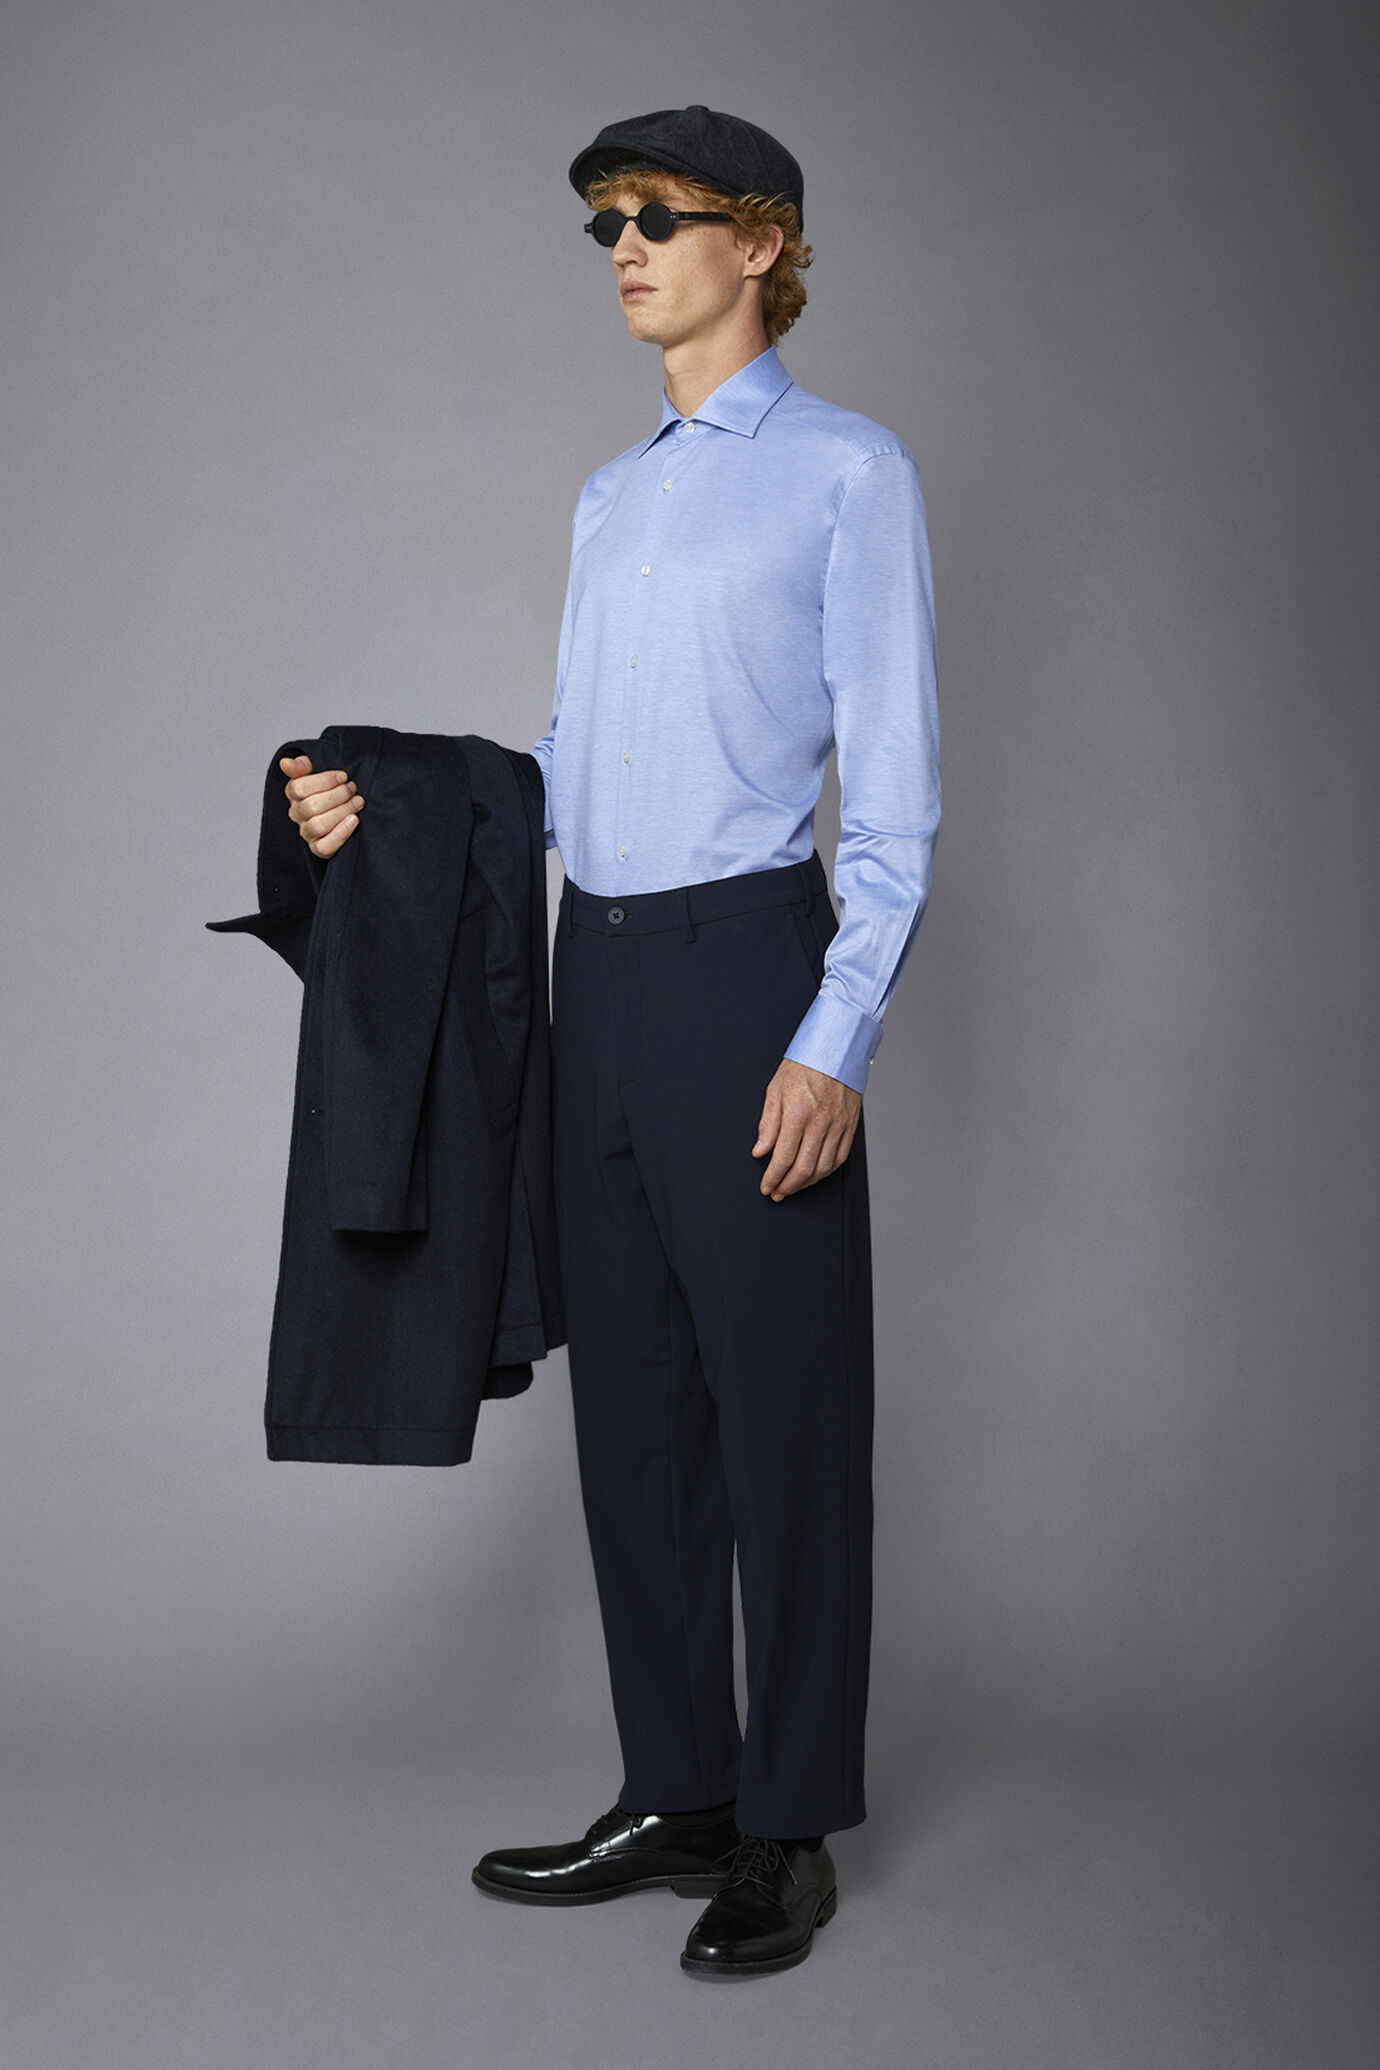 Pantalone chino uomo tessuto in nylon elasticizzato comfort fit image number 1